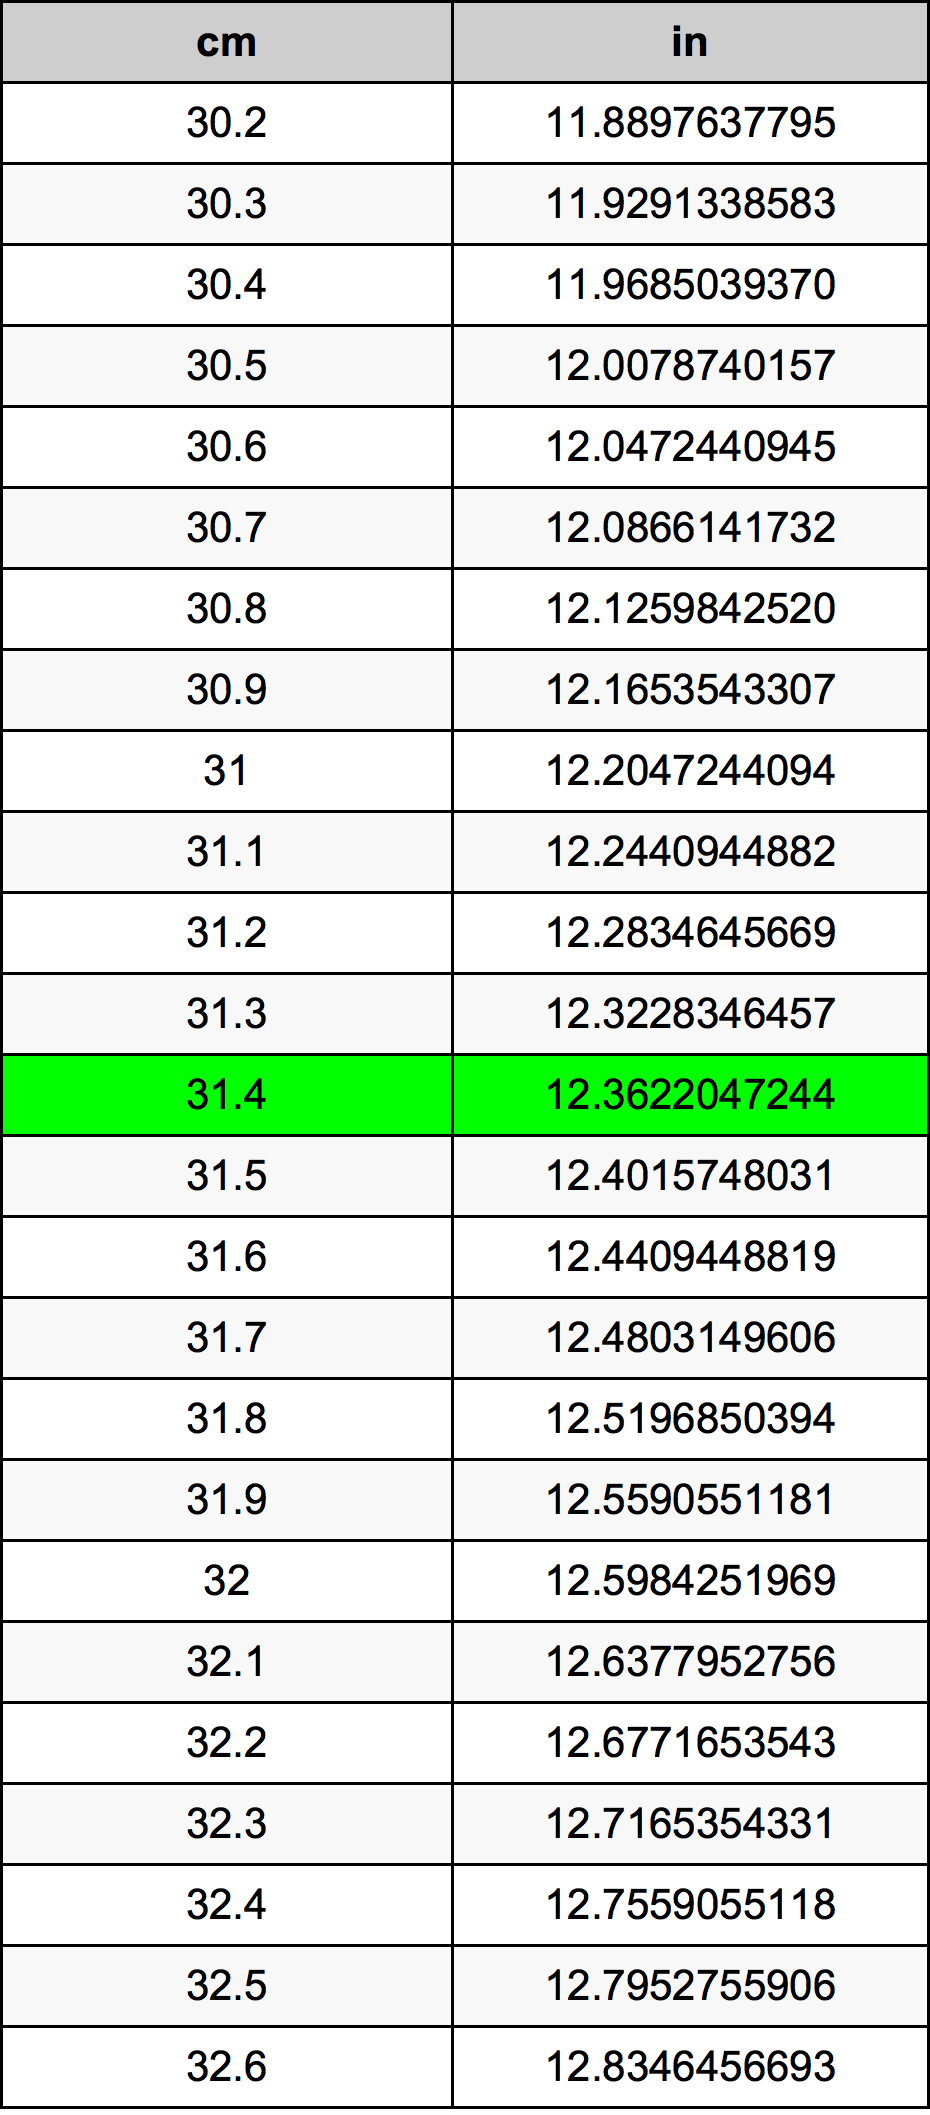 31.4 Centiméter átszámítási táblázat